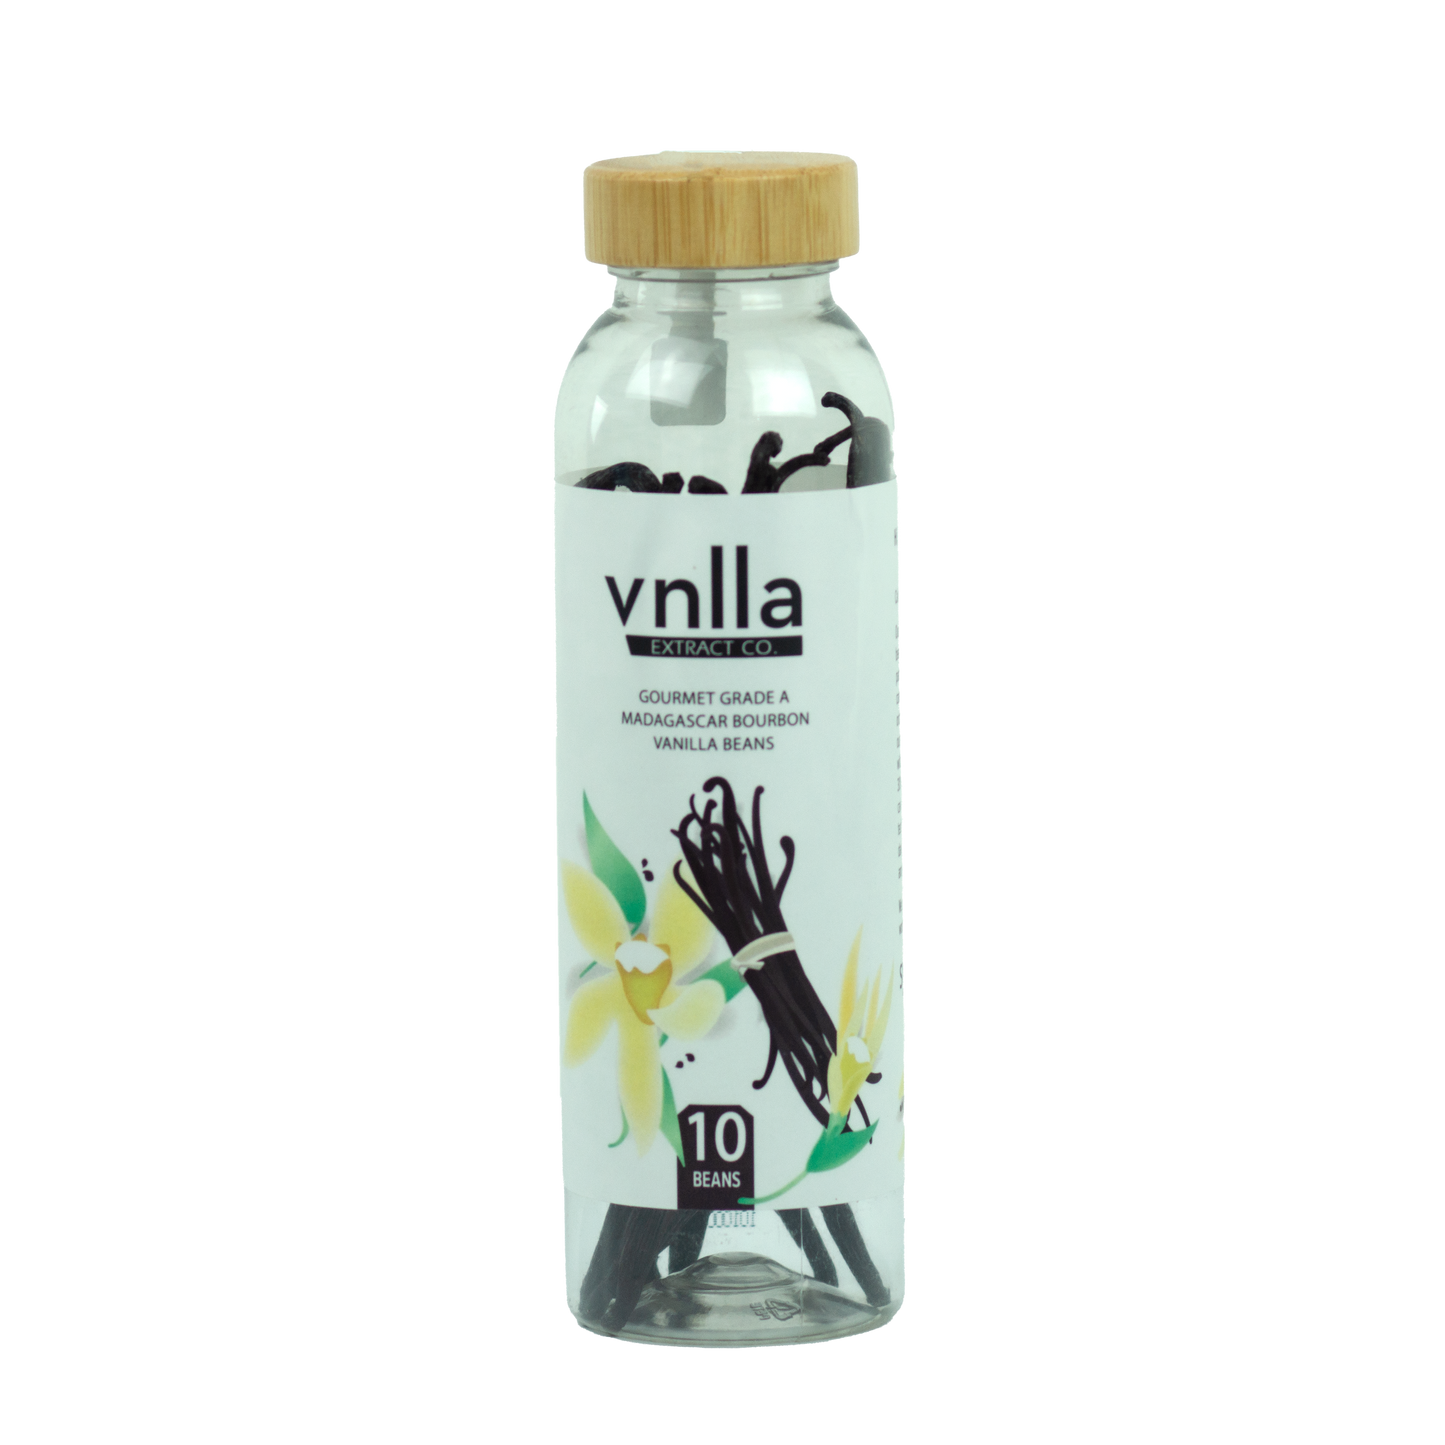 Vnlla Extract Co. - Gourmet Grade A Madagascar Bourbon Vanilla Beans